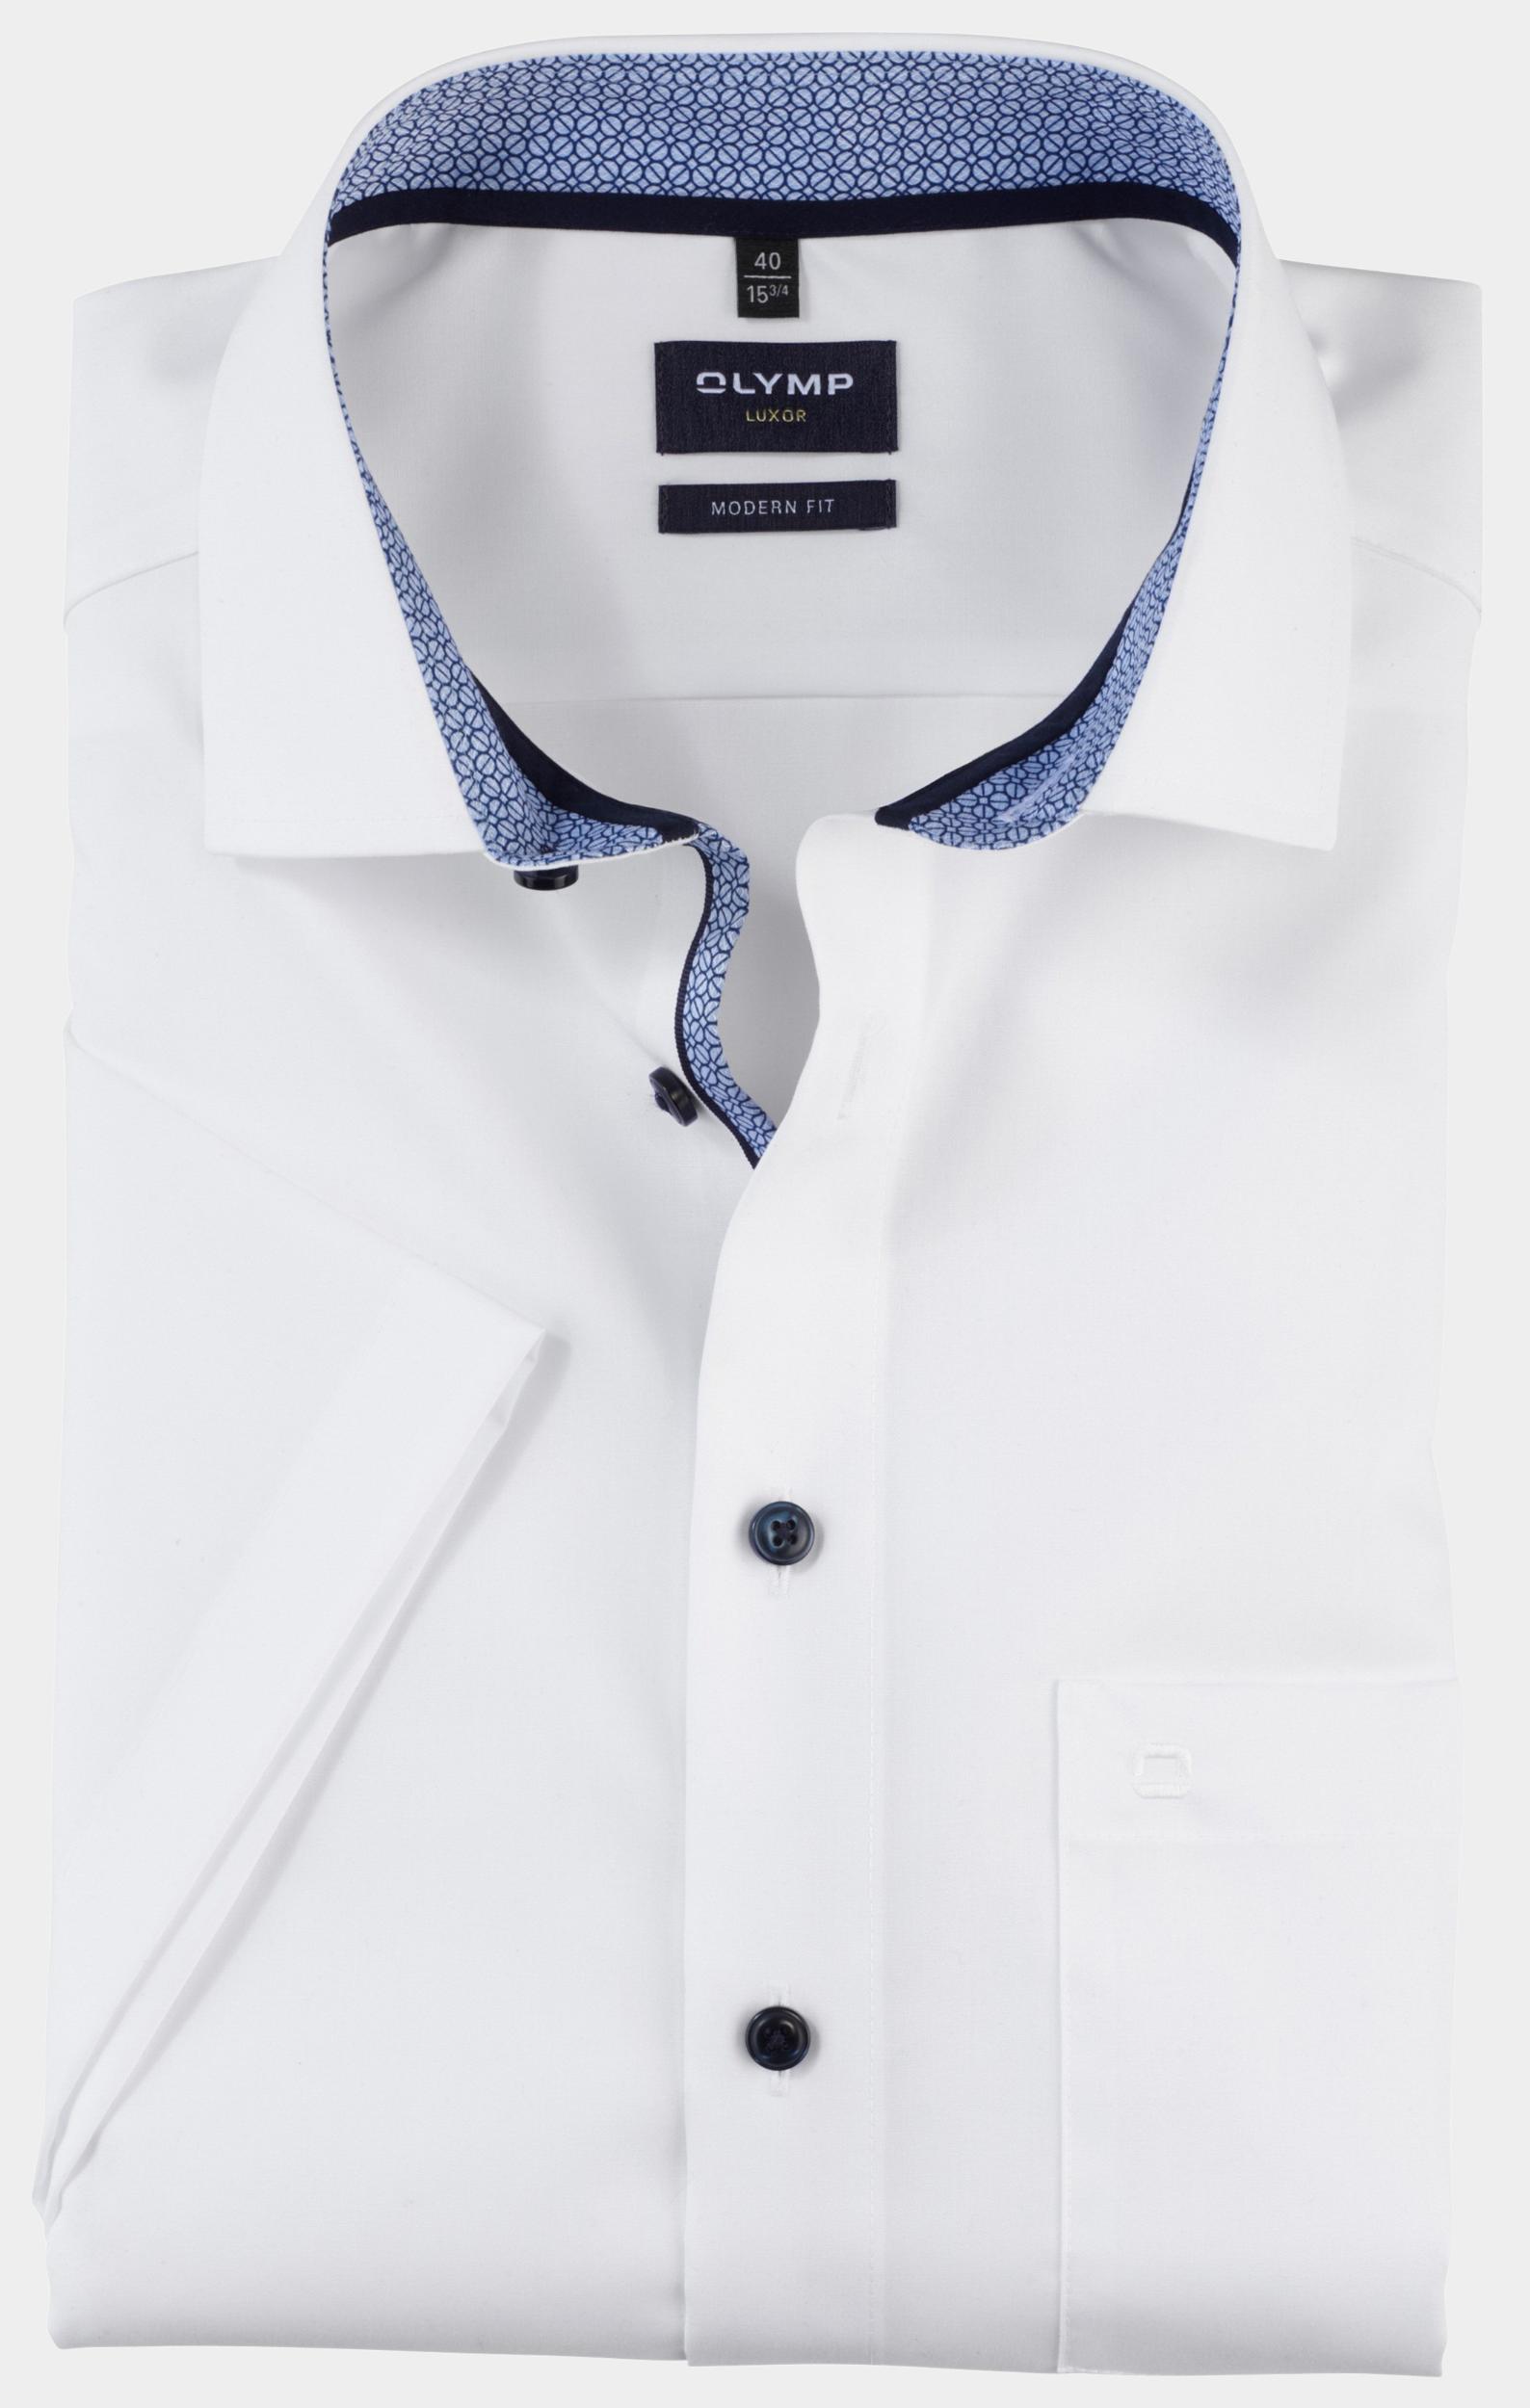 Olymp Business hemd korte mouw Wit 0743/12 Hemden 074312/00